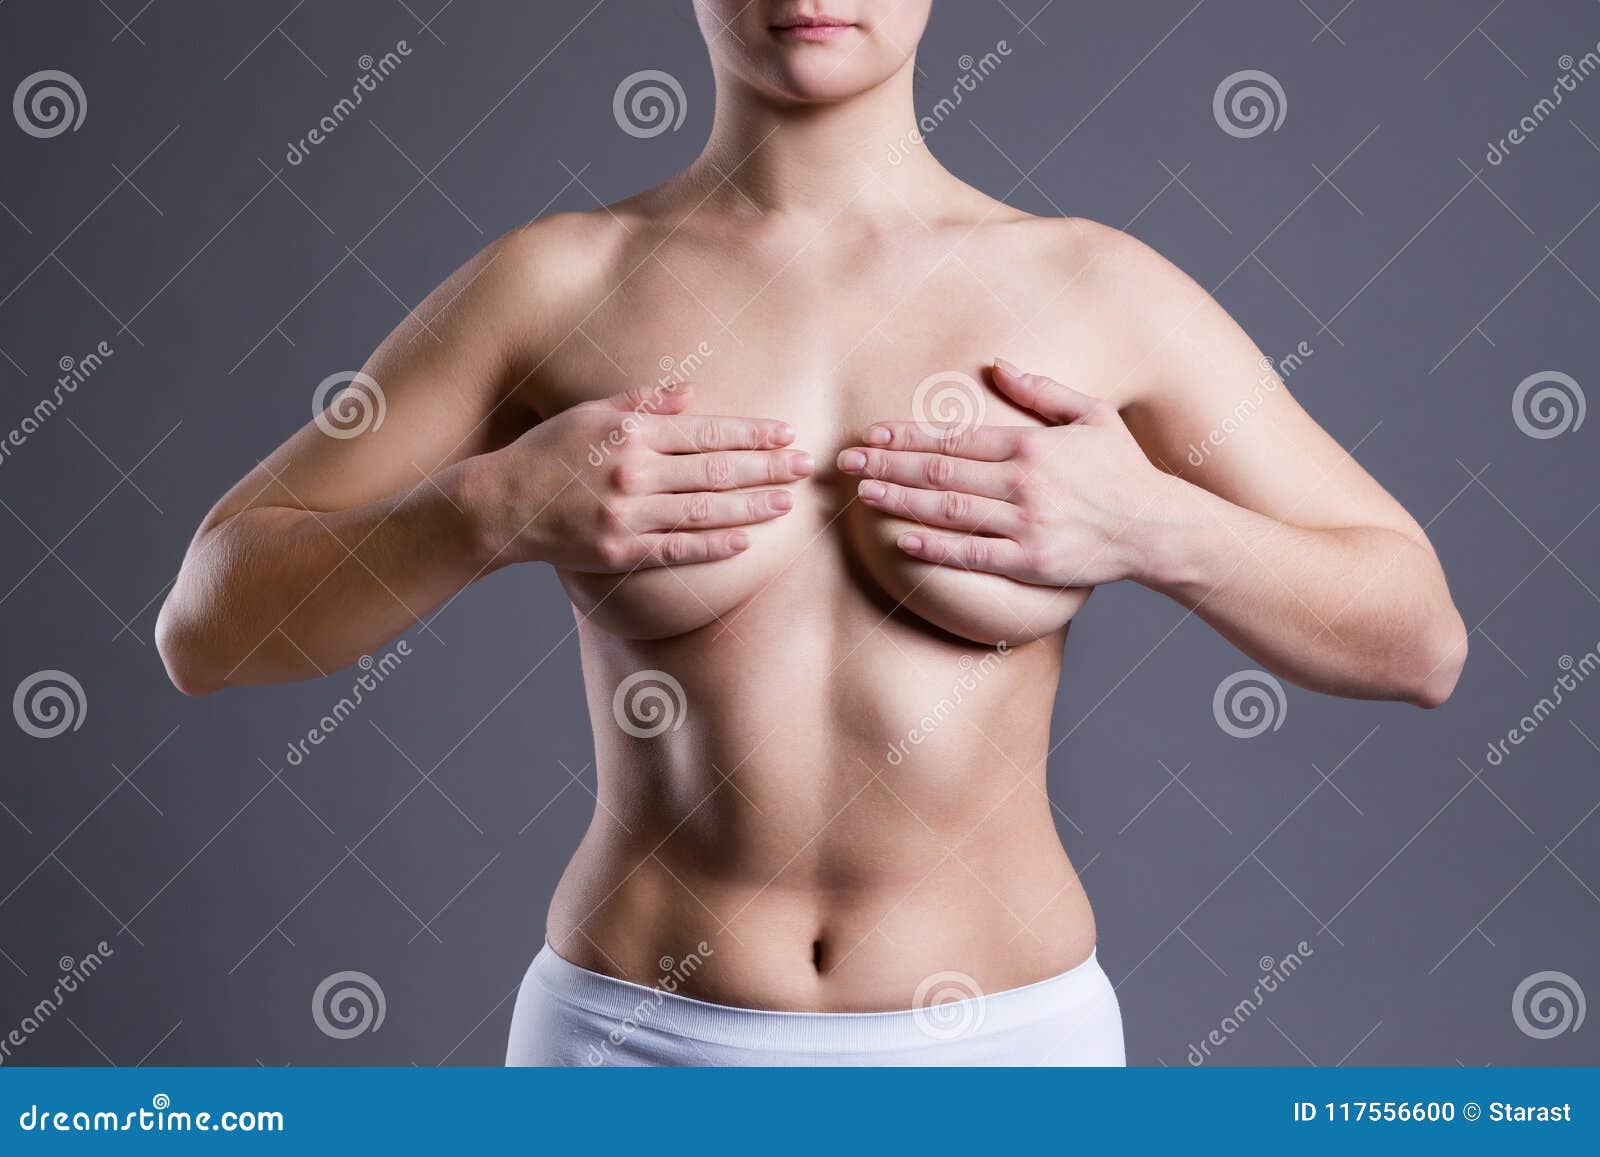 чем полезна грудь для мужчин фото 104